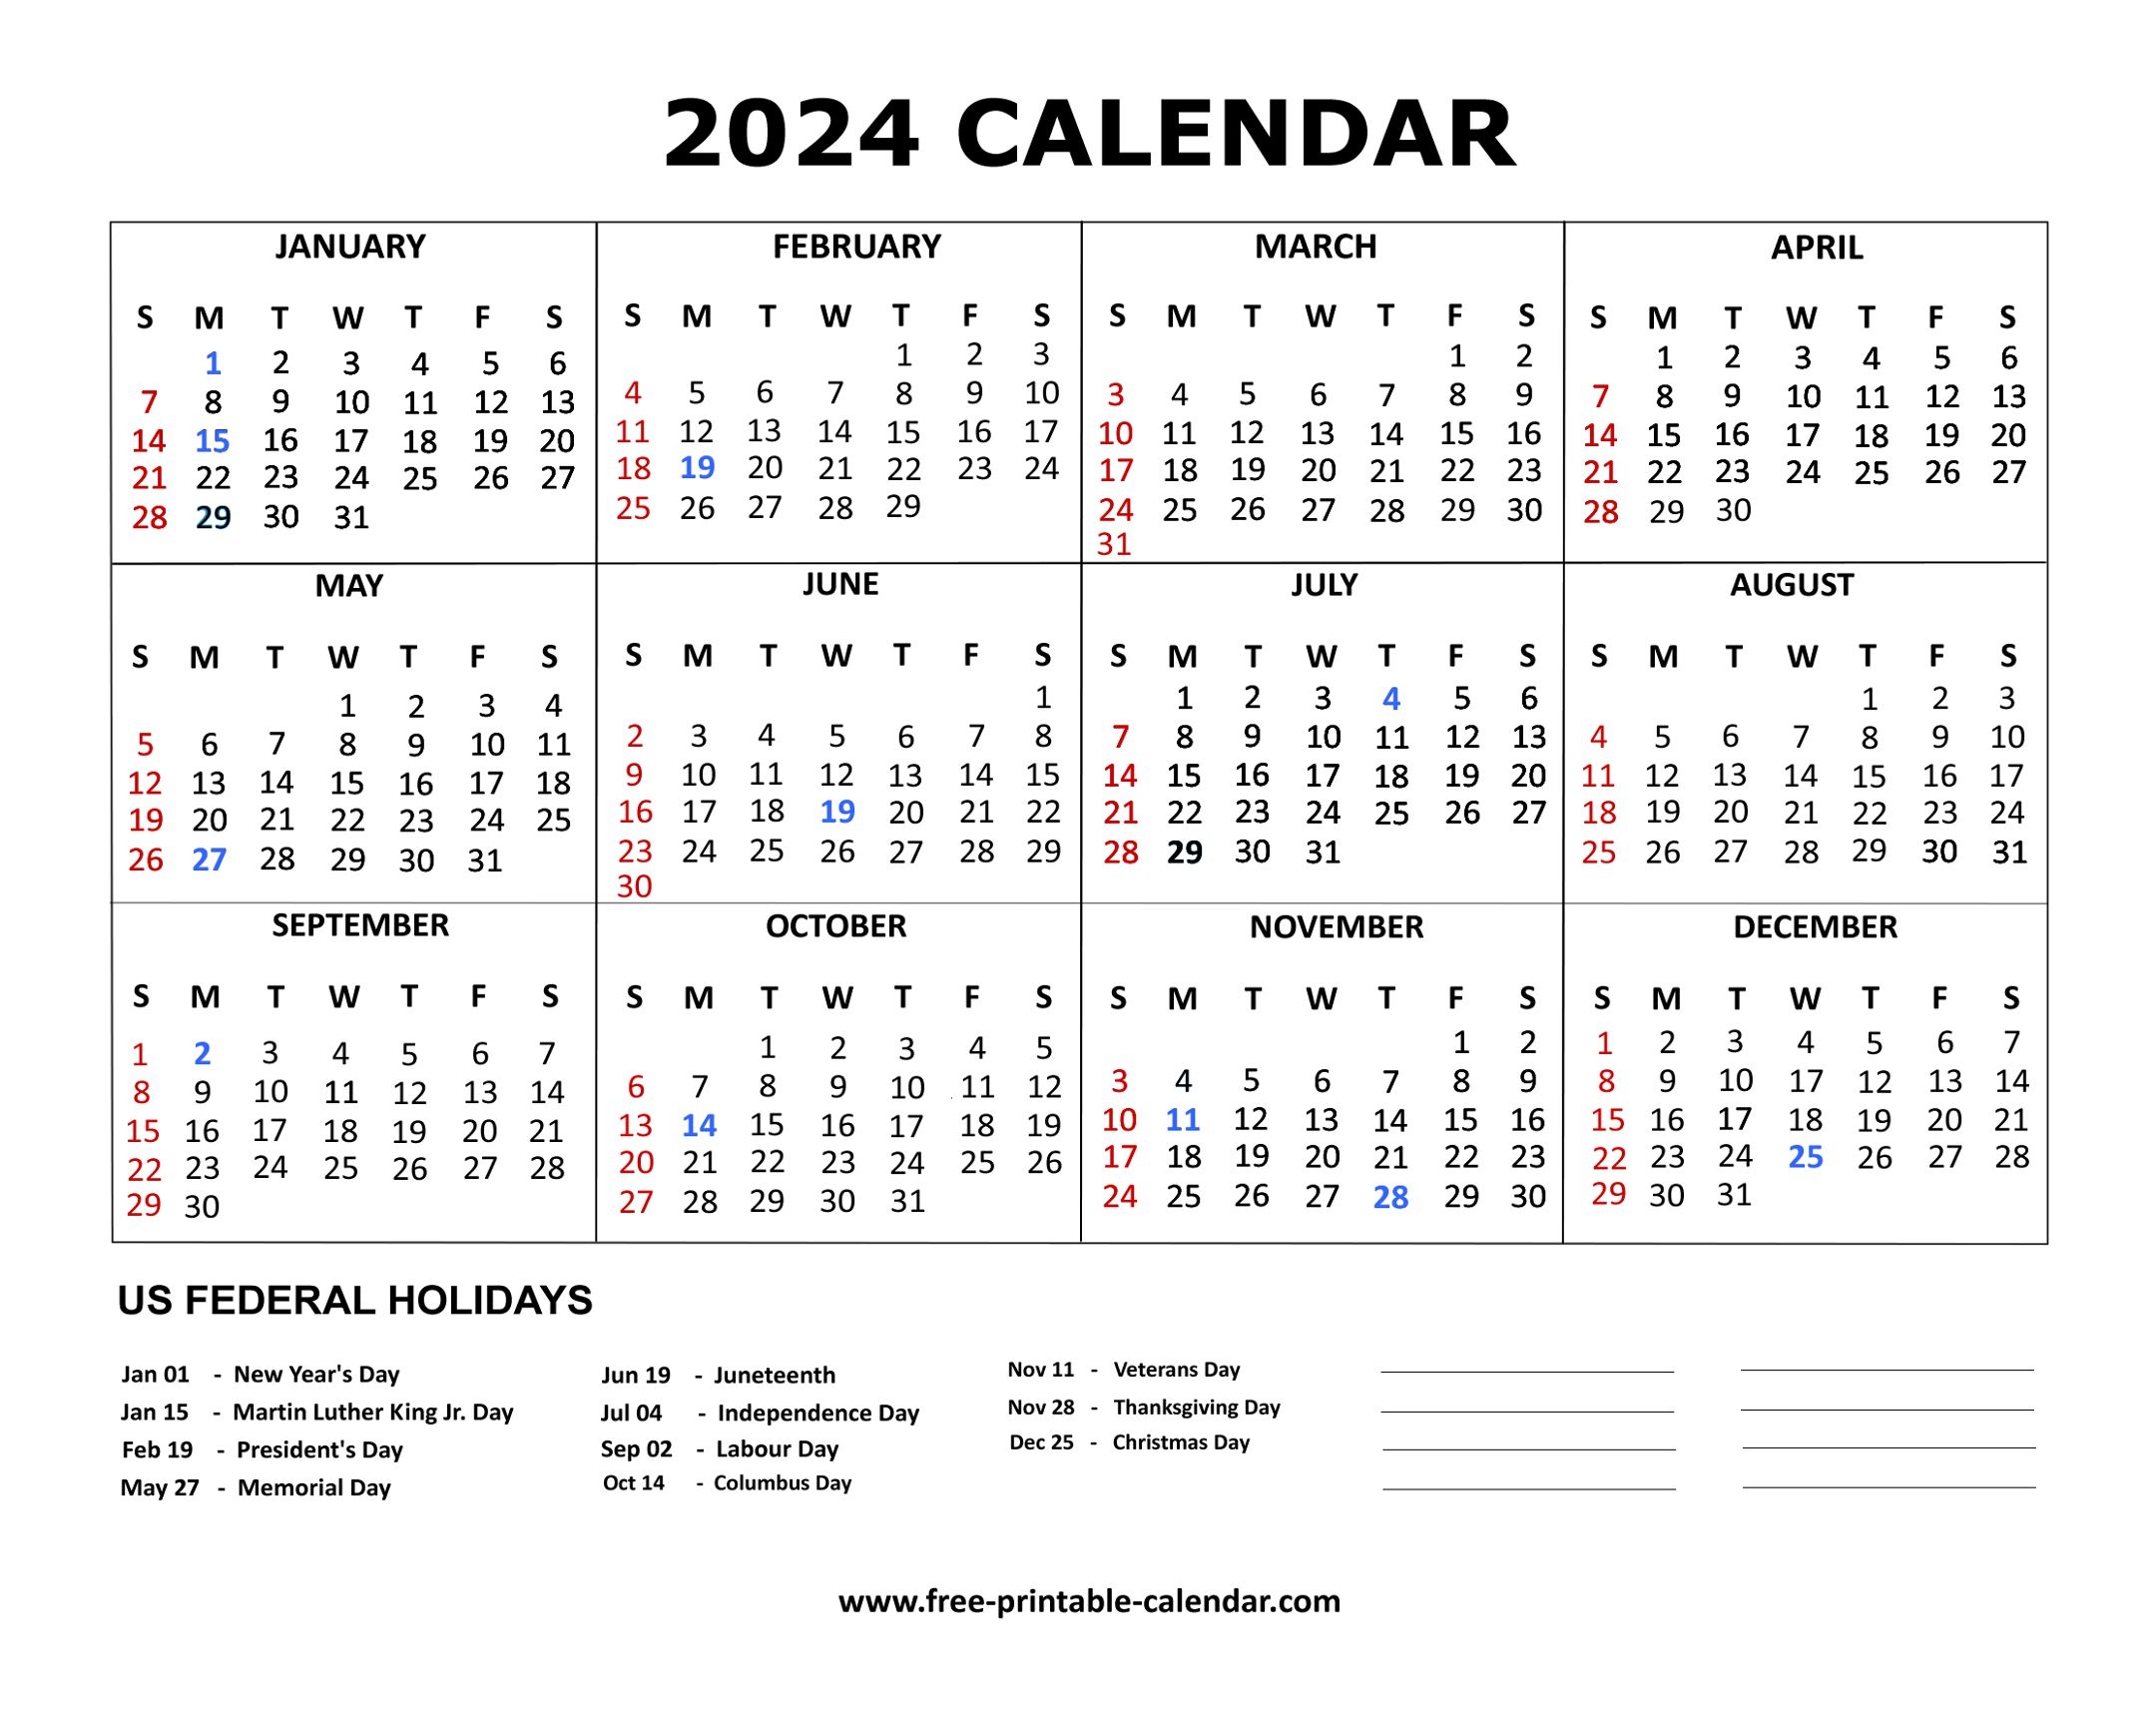 2024 Calendar in Free Printable Calendar 2024 Usa